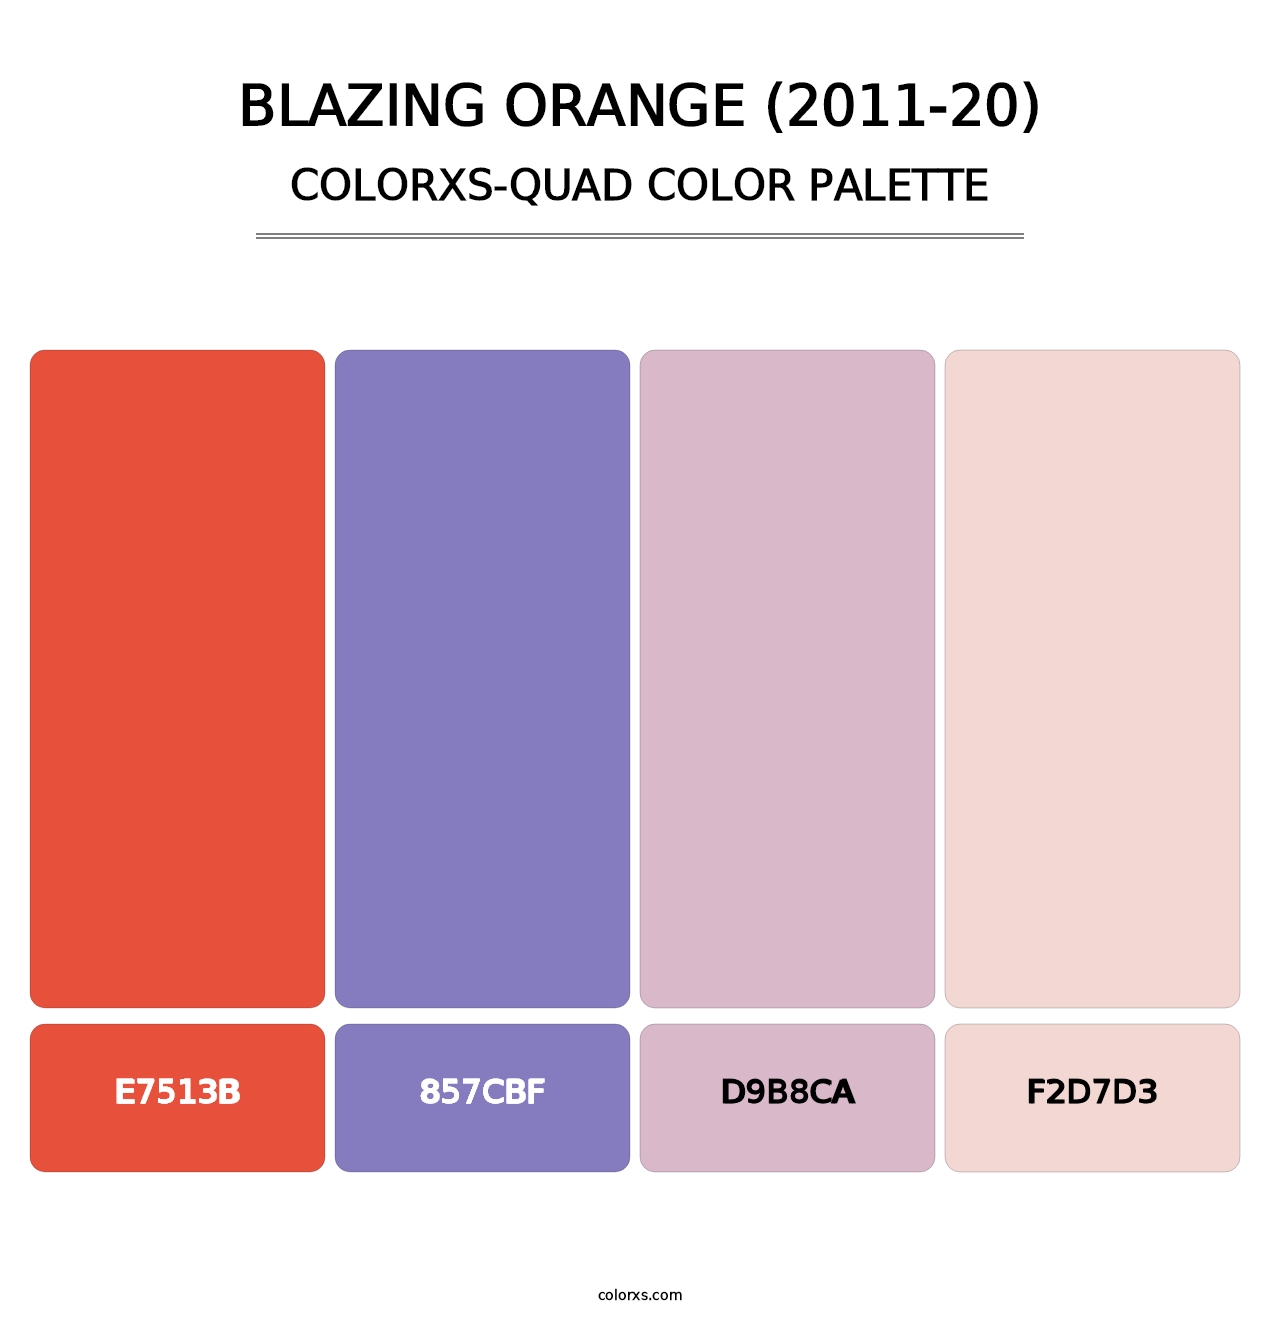 Blazing Orange (2011-20) - Colorxs Quad Palette